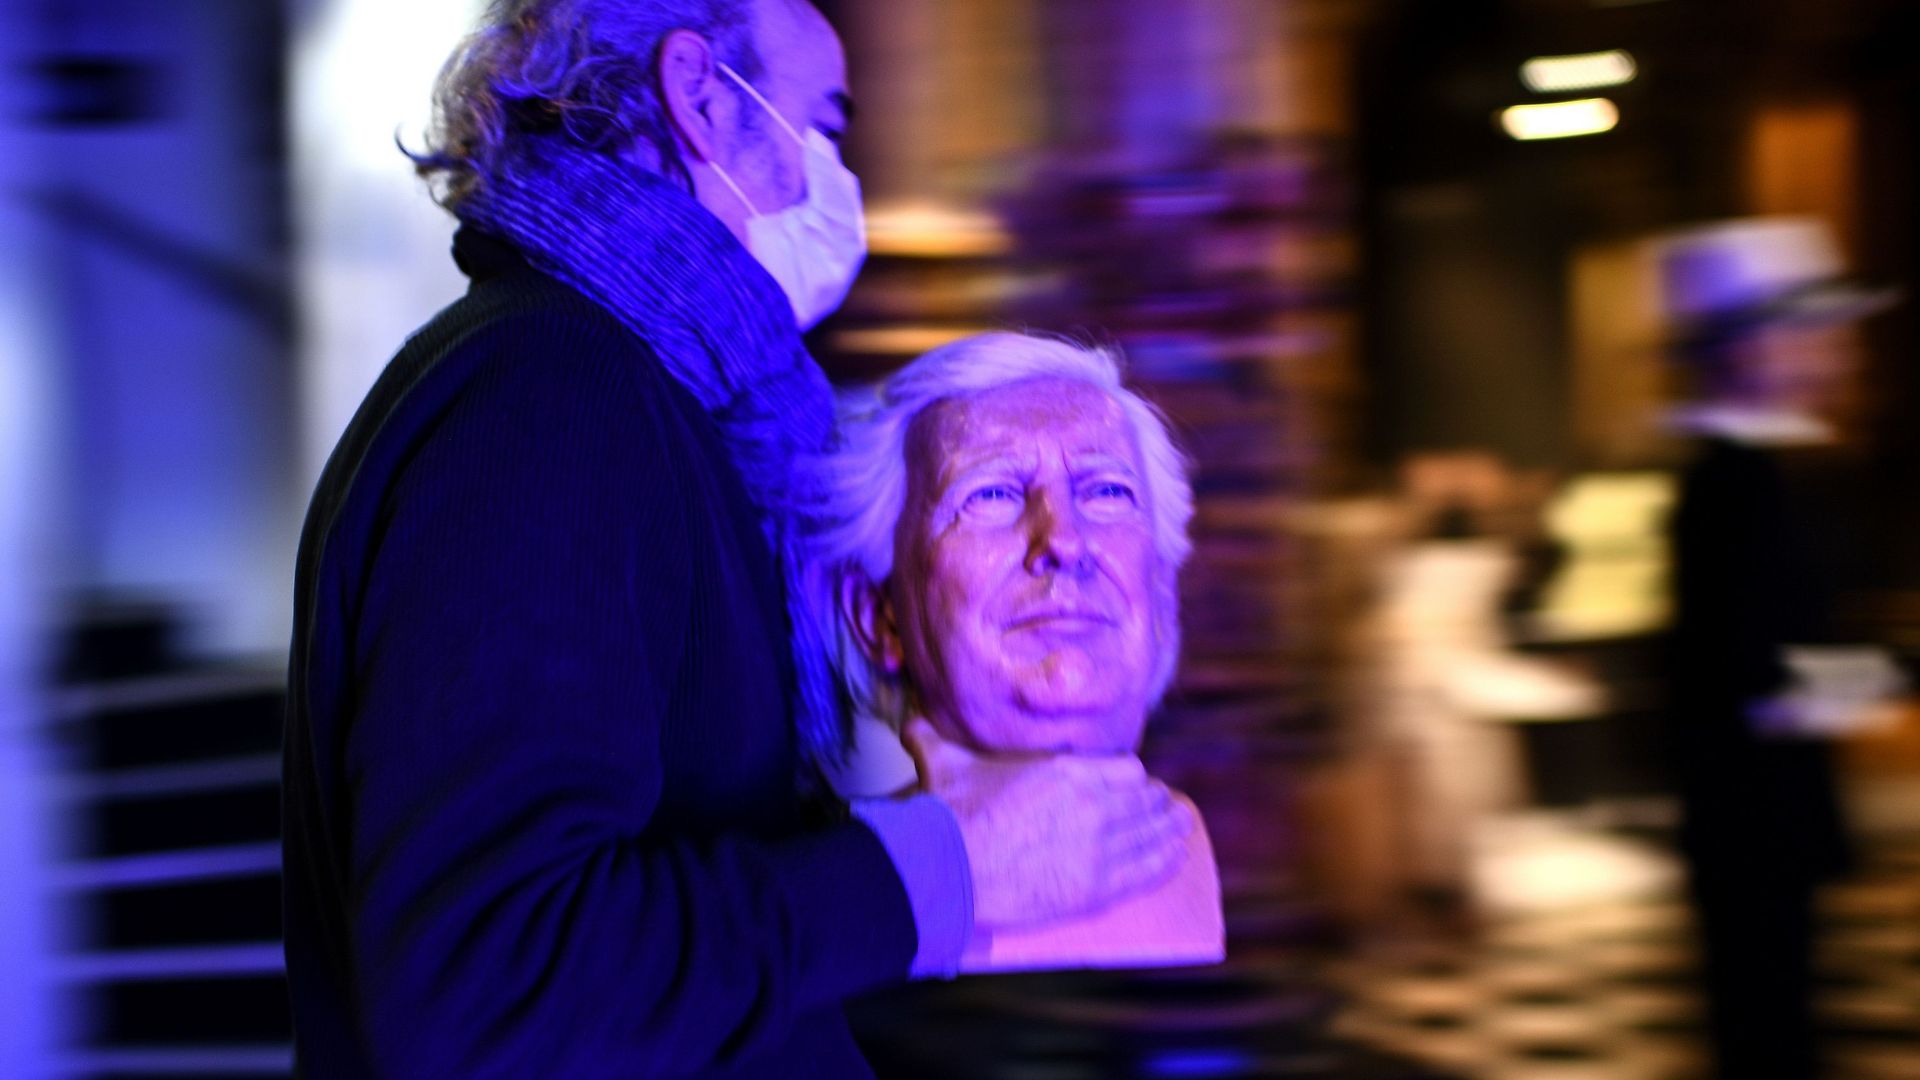 Le musée Grévin range la statue de Donald Trump au placard